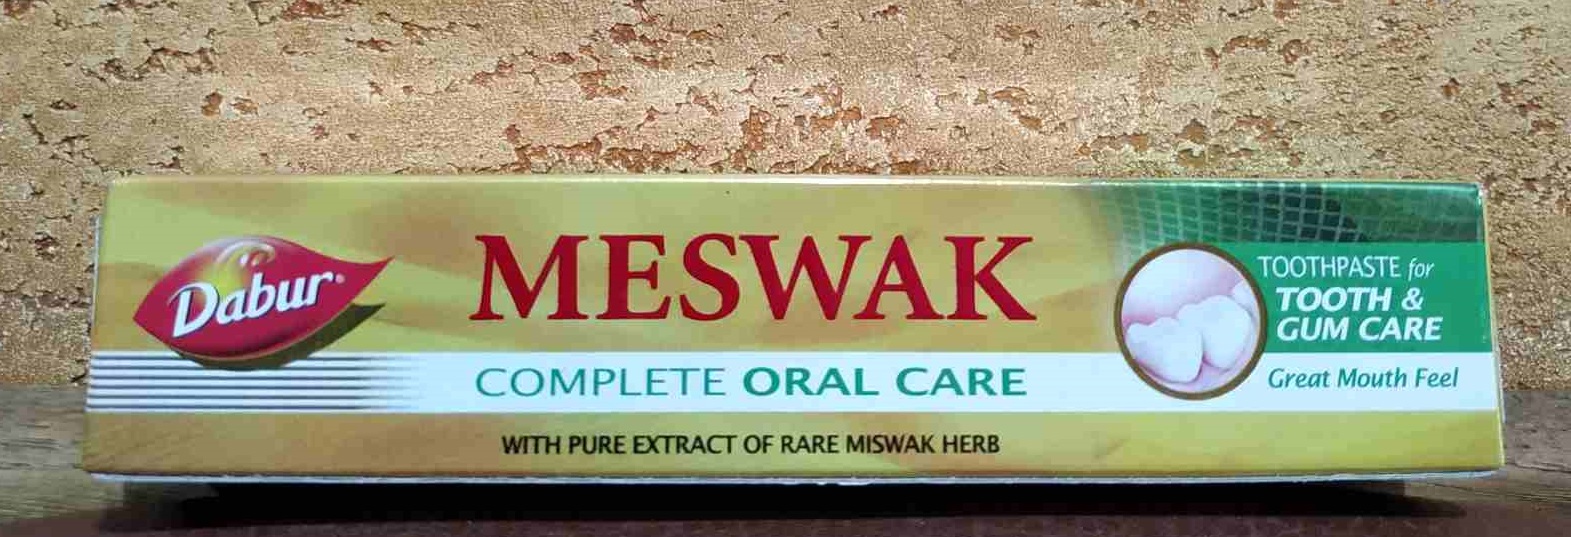 Зубная паста Meswak Dabur Мисвак Дабур Индия аюрведа - комплексный уход за ротовой полостью мисвак 50 гр Дабур